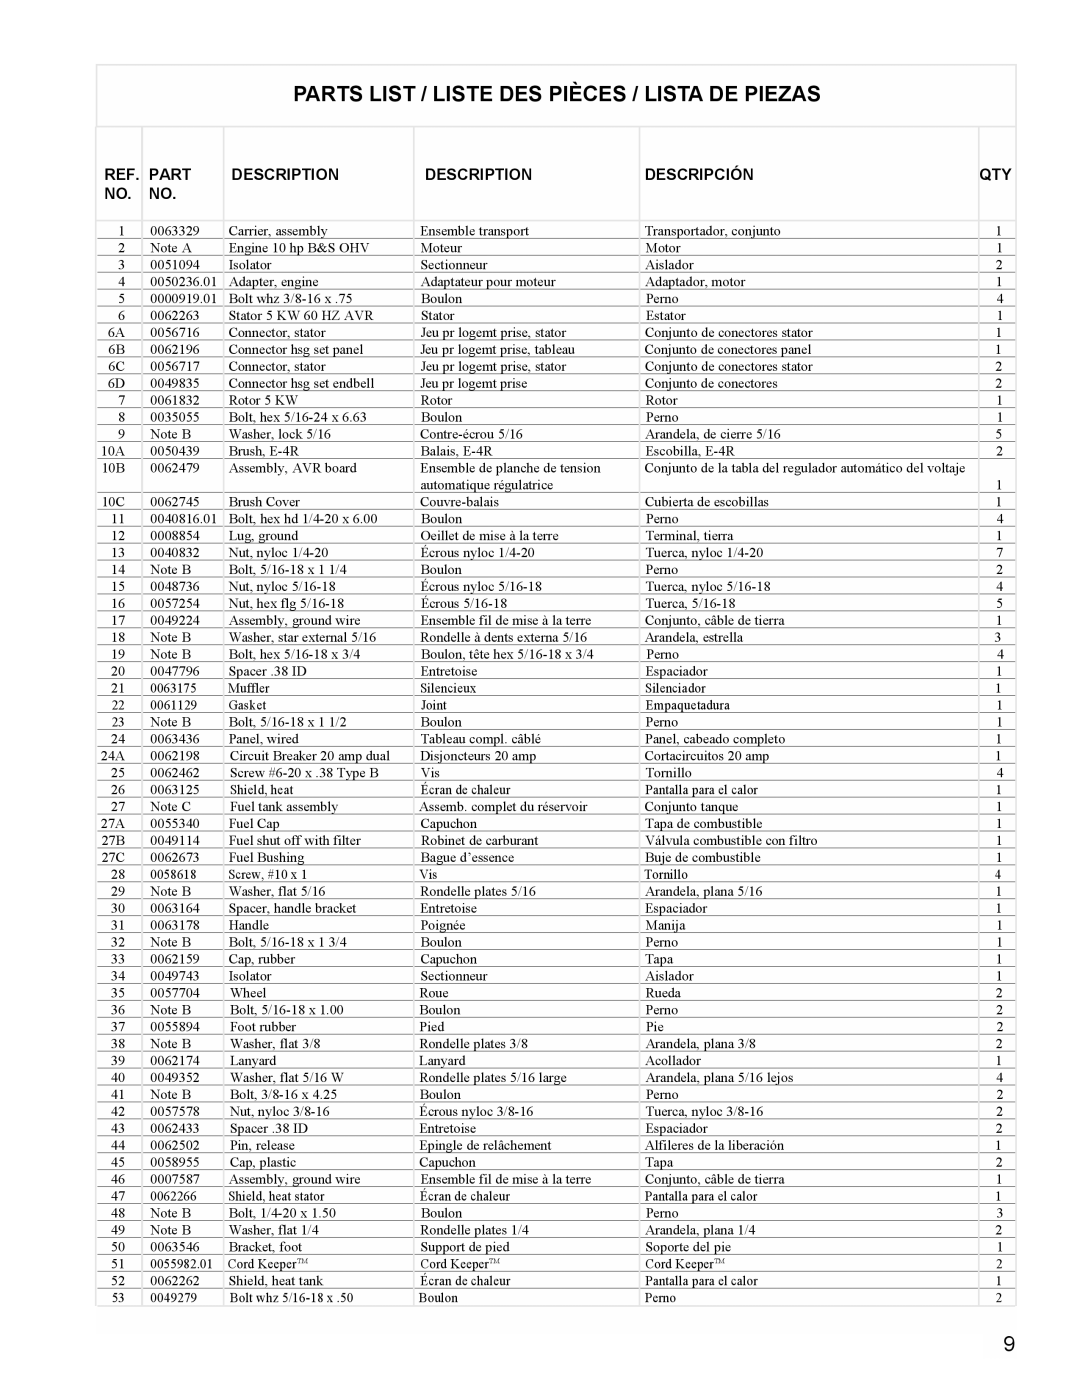 Powermate PC0545009 manual Parts List / Liste Des Pièces / Lista De Piezas, Description, Descripción 